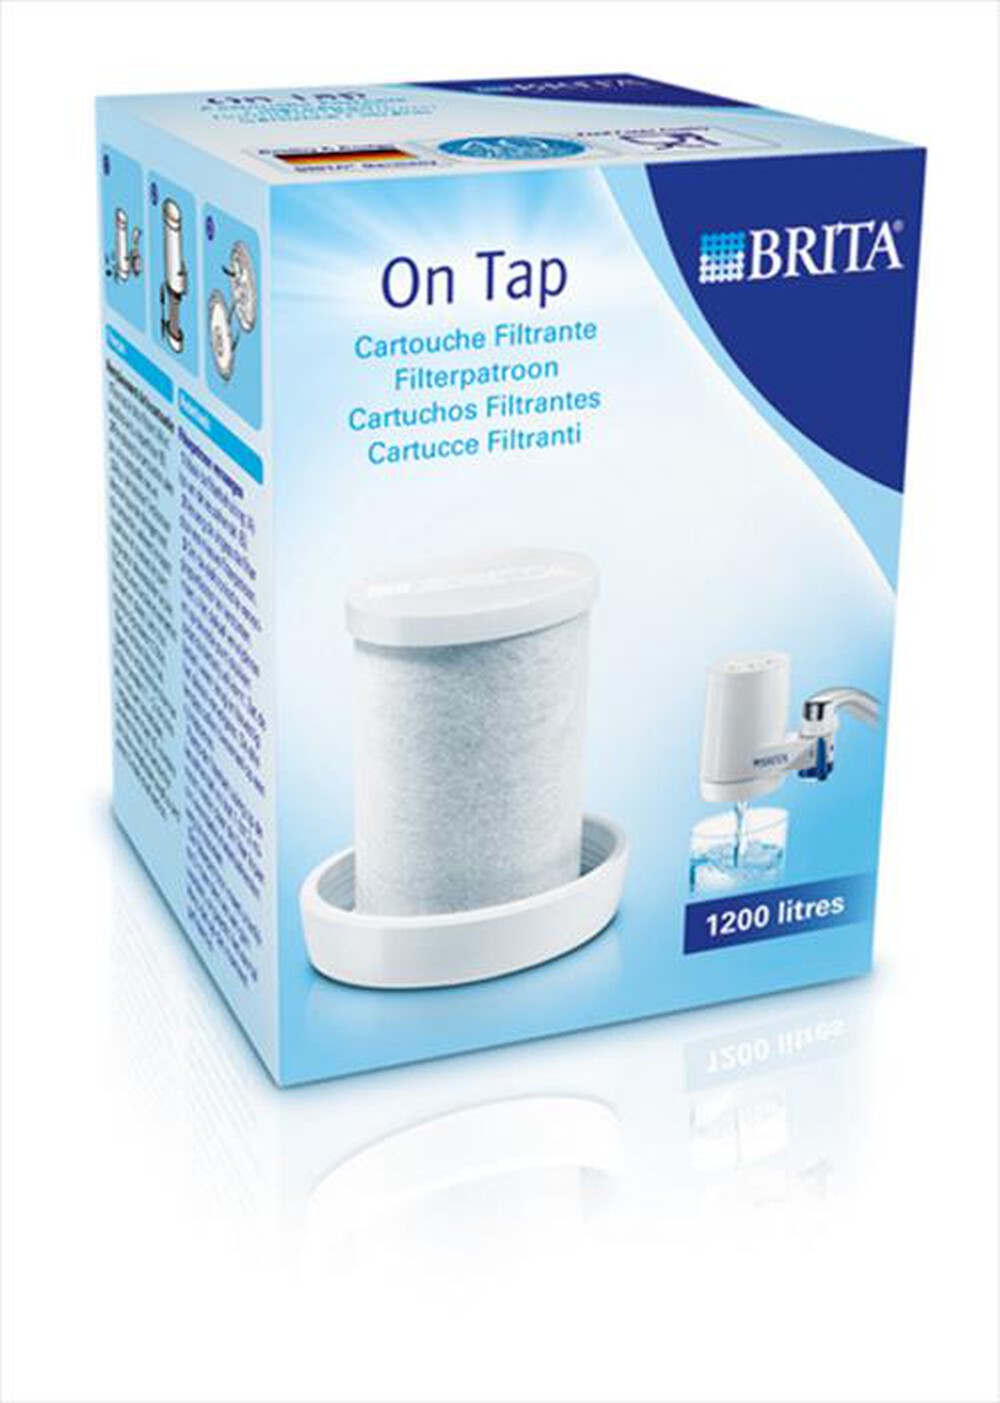 "BRITA - On Tap Filter Cartridge"